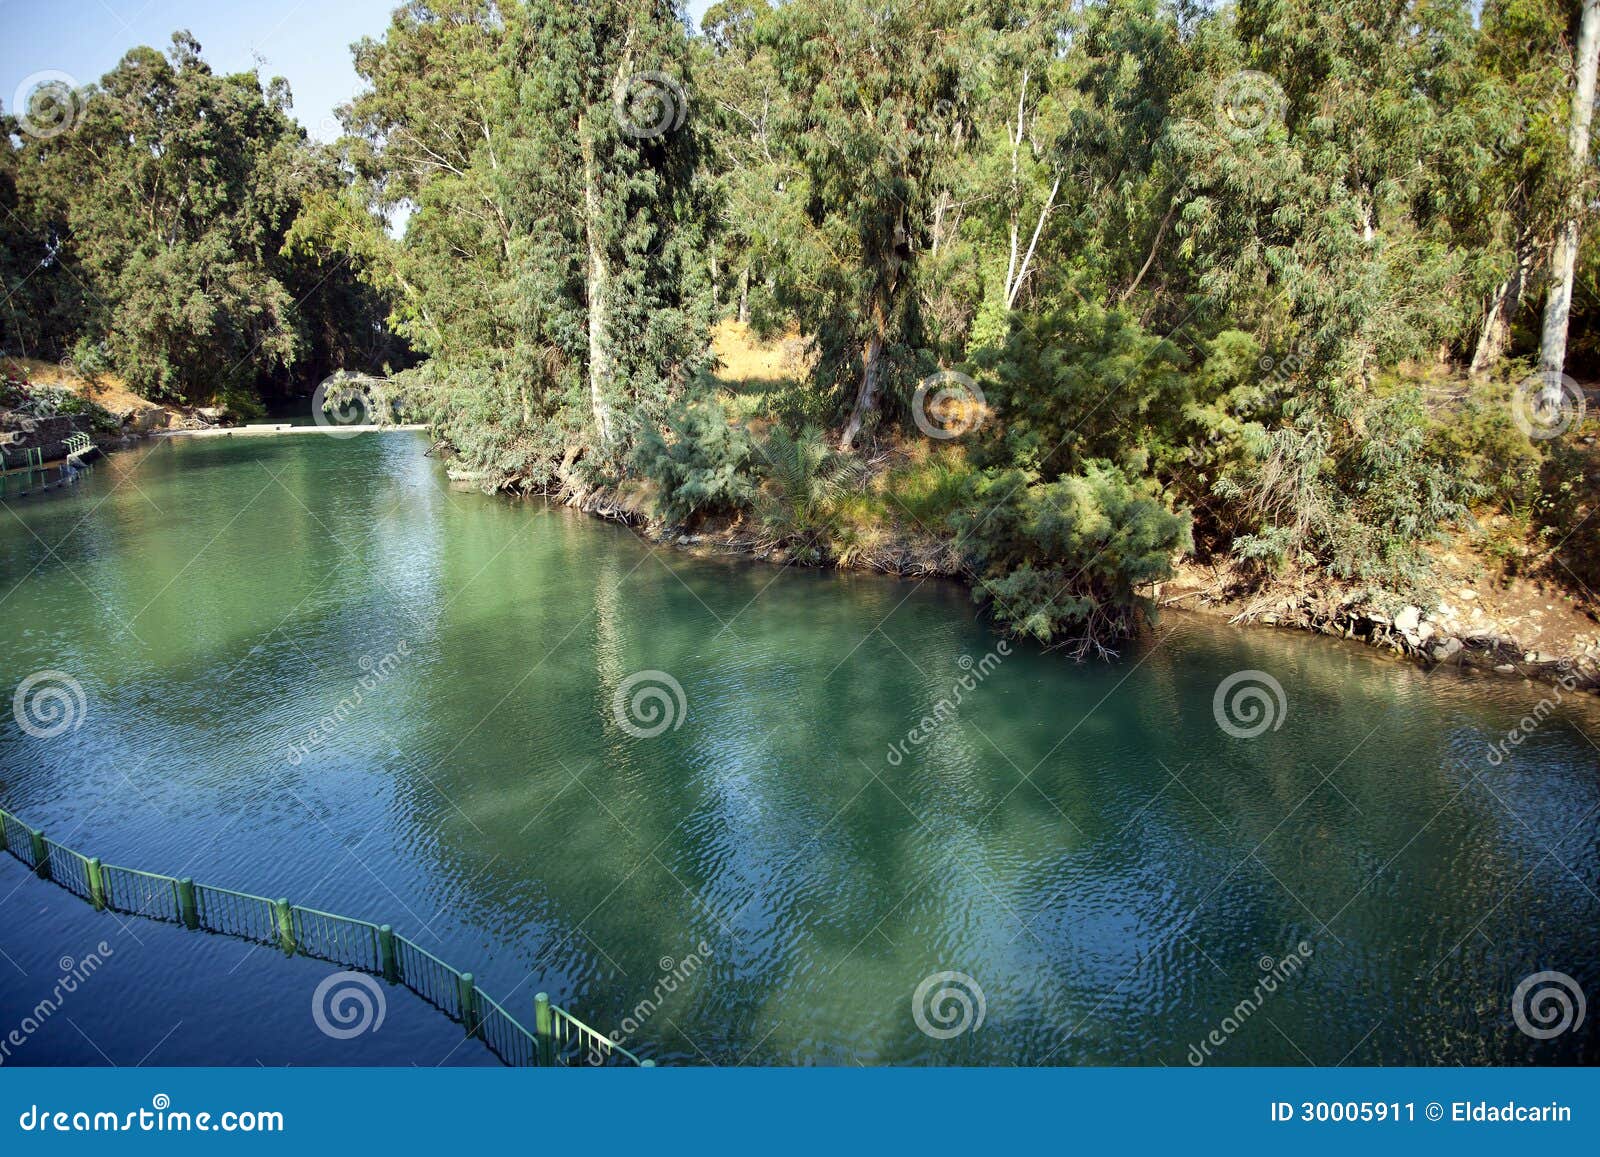 jordan river baptismal site